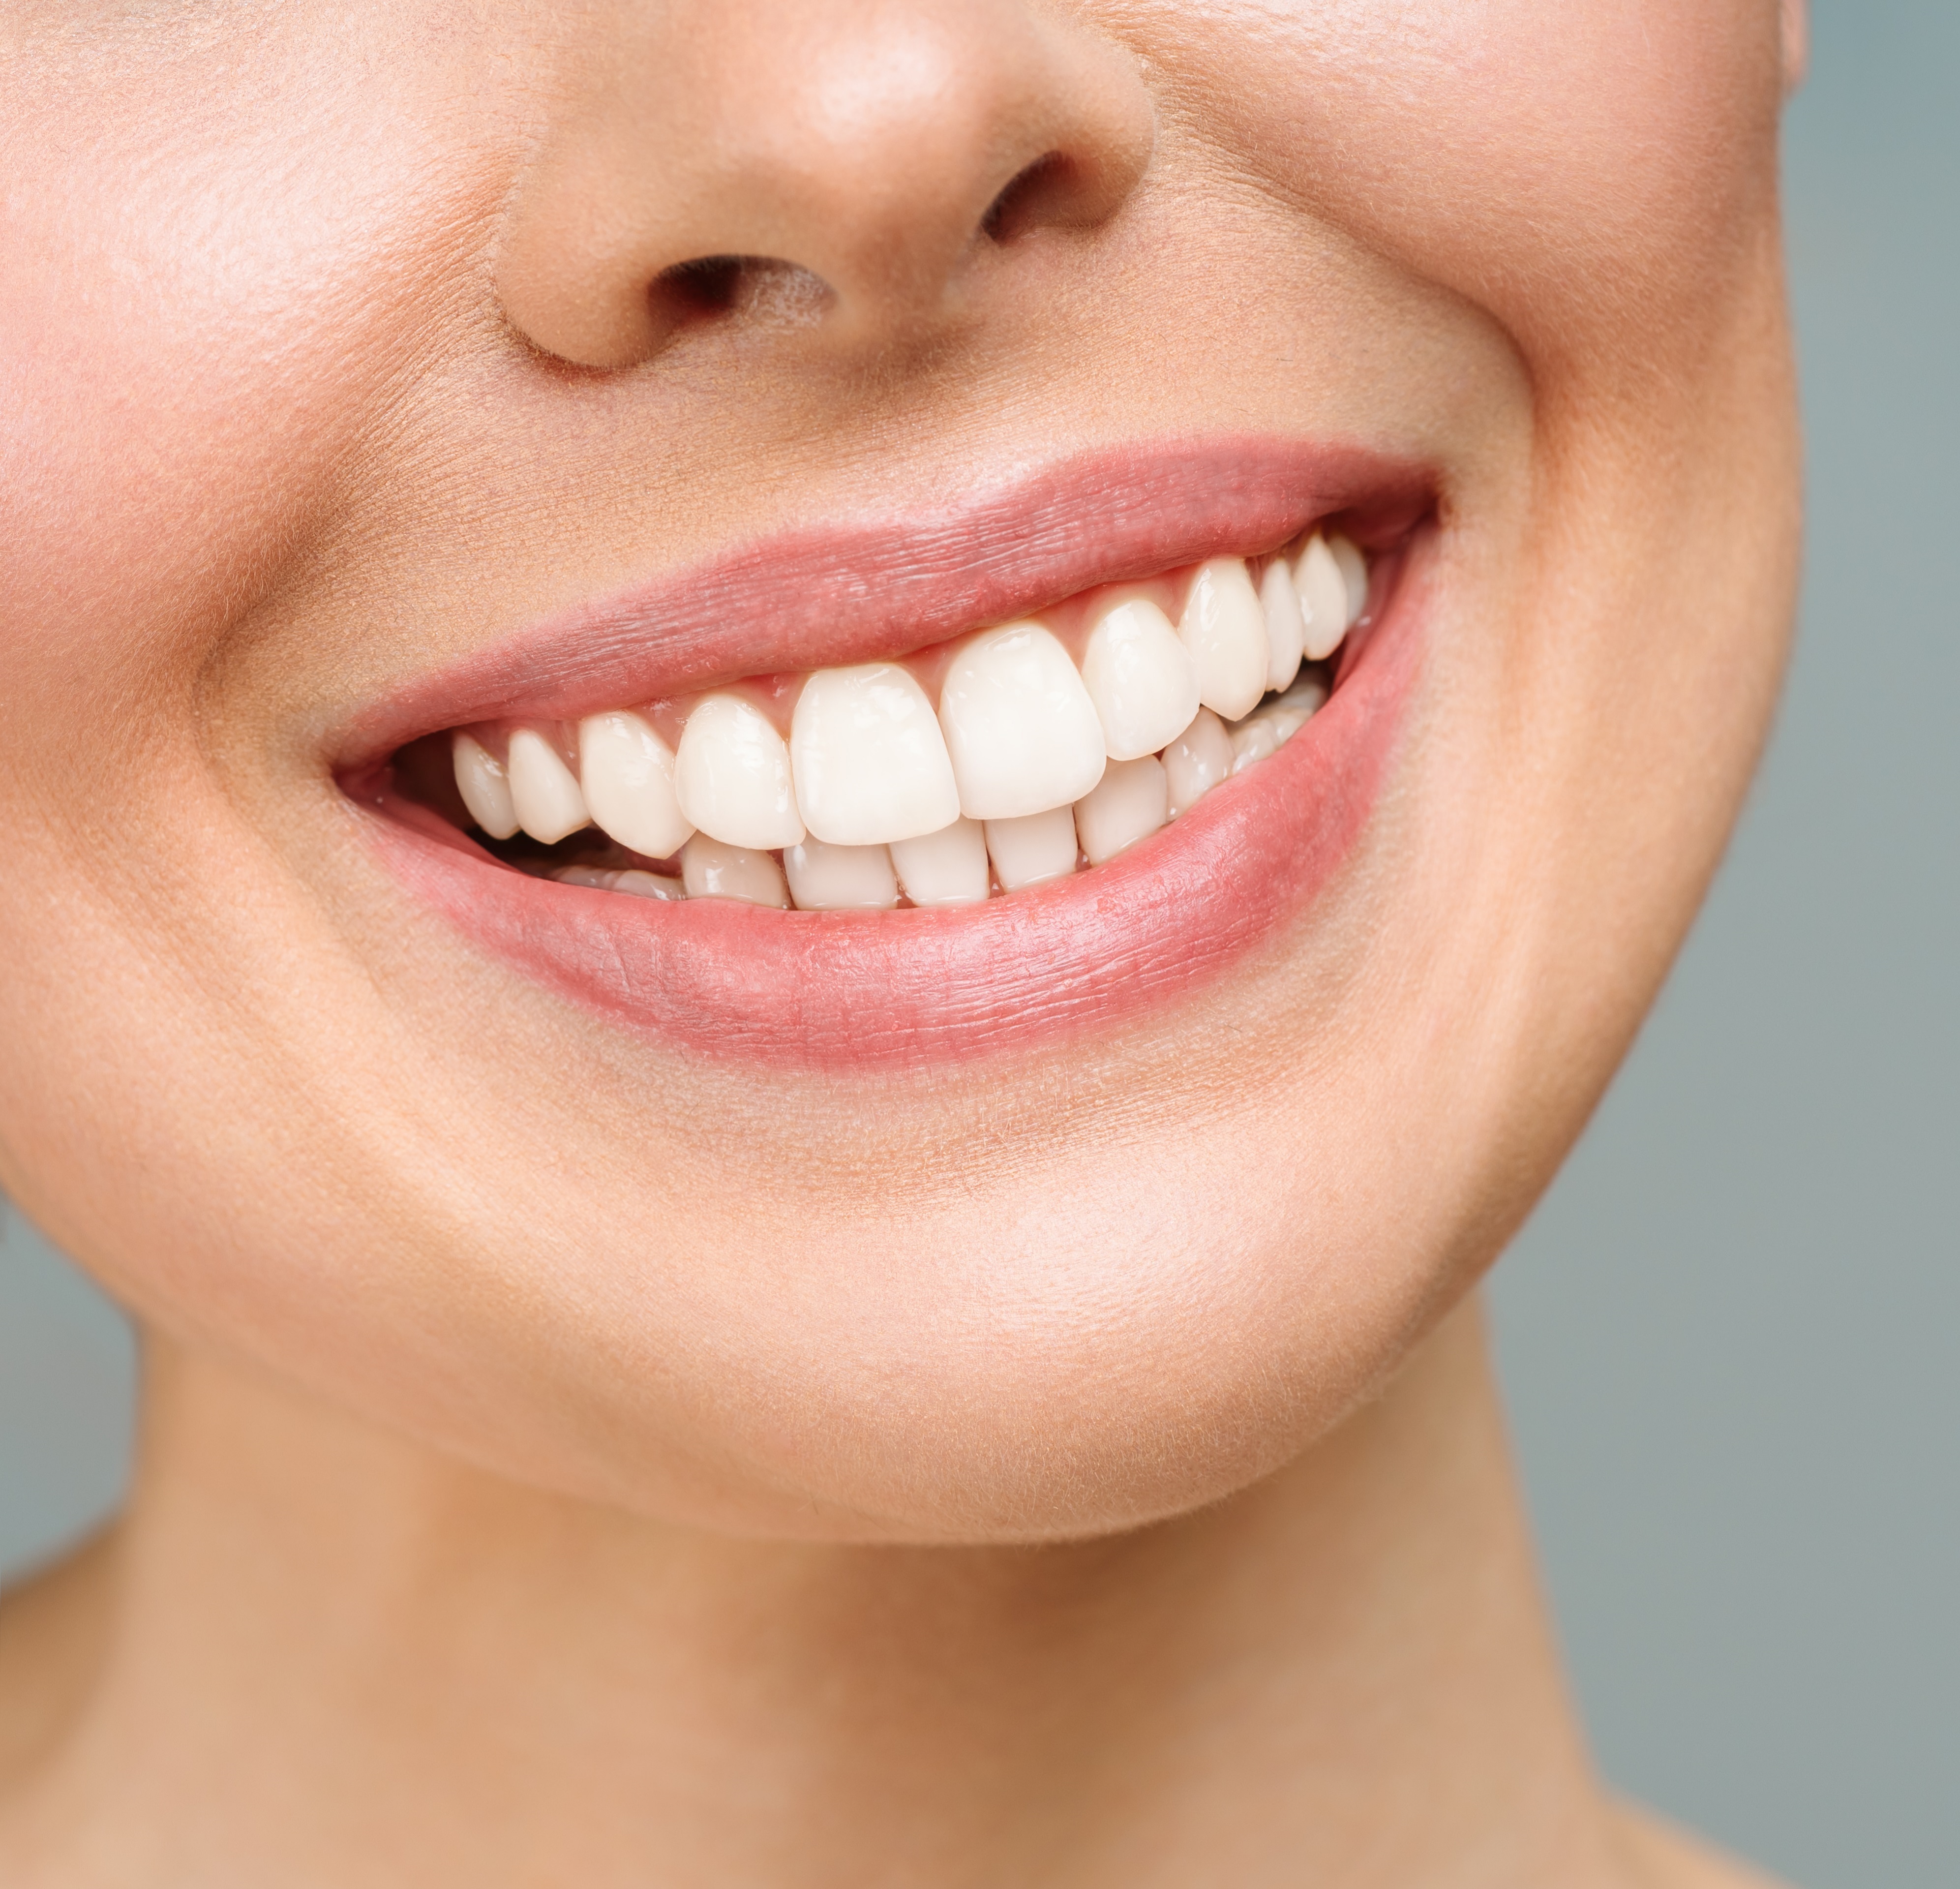 Частичное съемное протезирование зубов